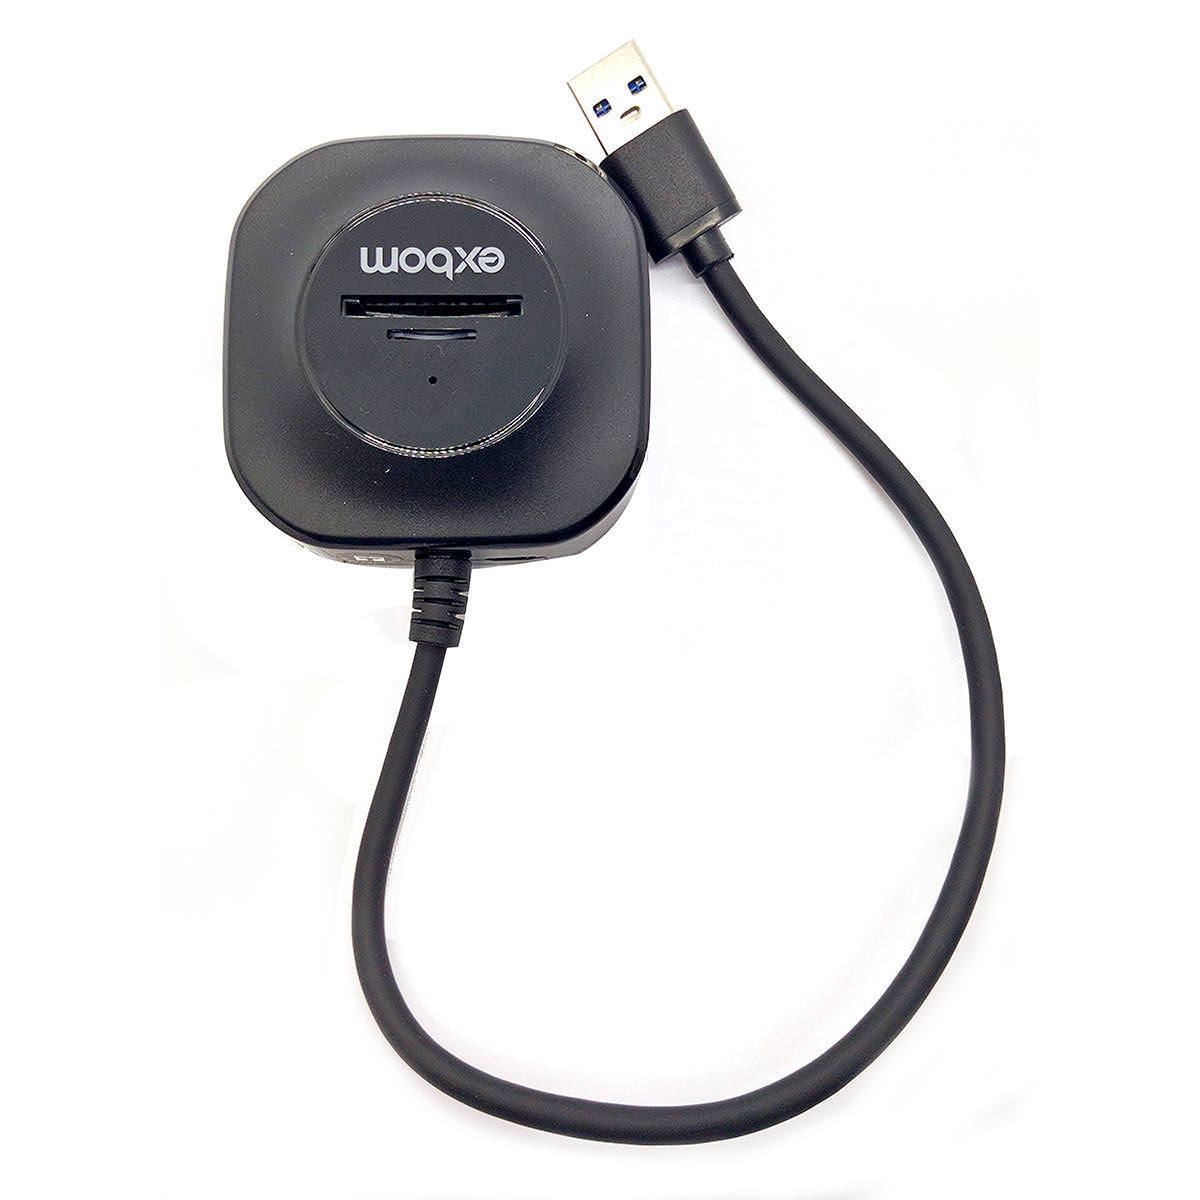 HUB USB 5 em 1 com 3 Portas USB 2.0 + 1 Leitor de Cartão microSD + 1 SD Exbom UH-R23